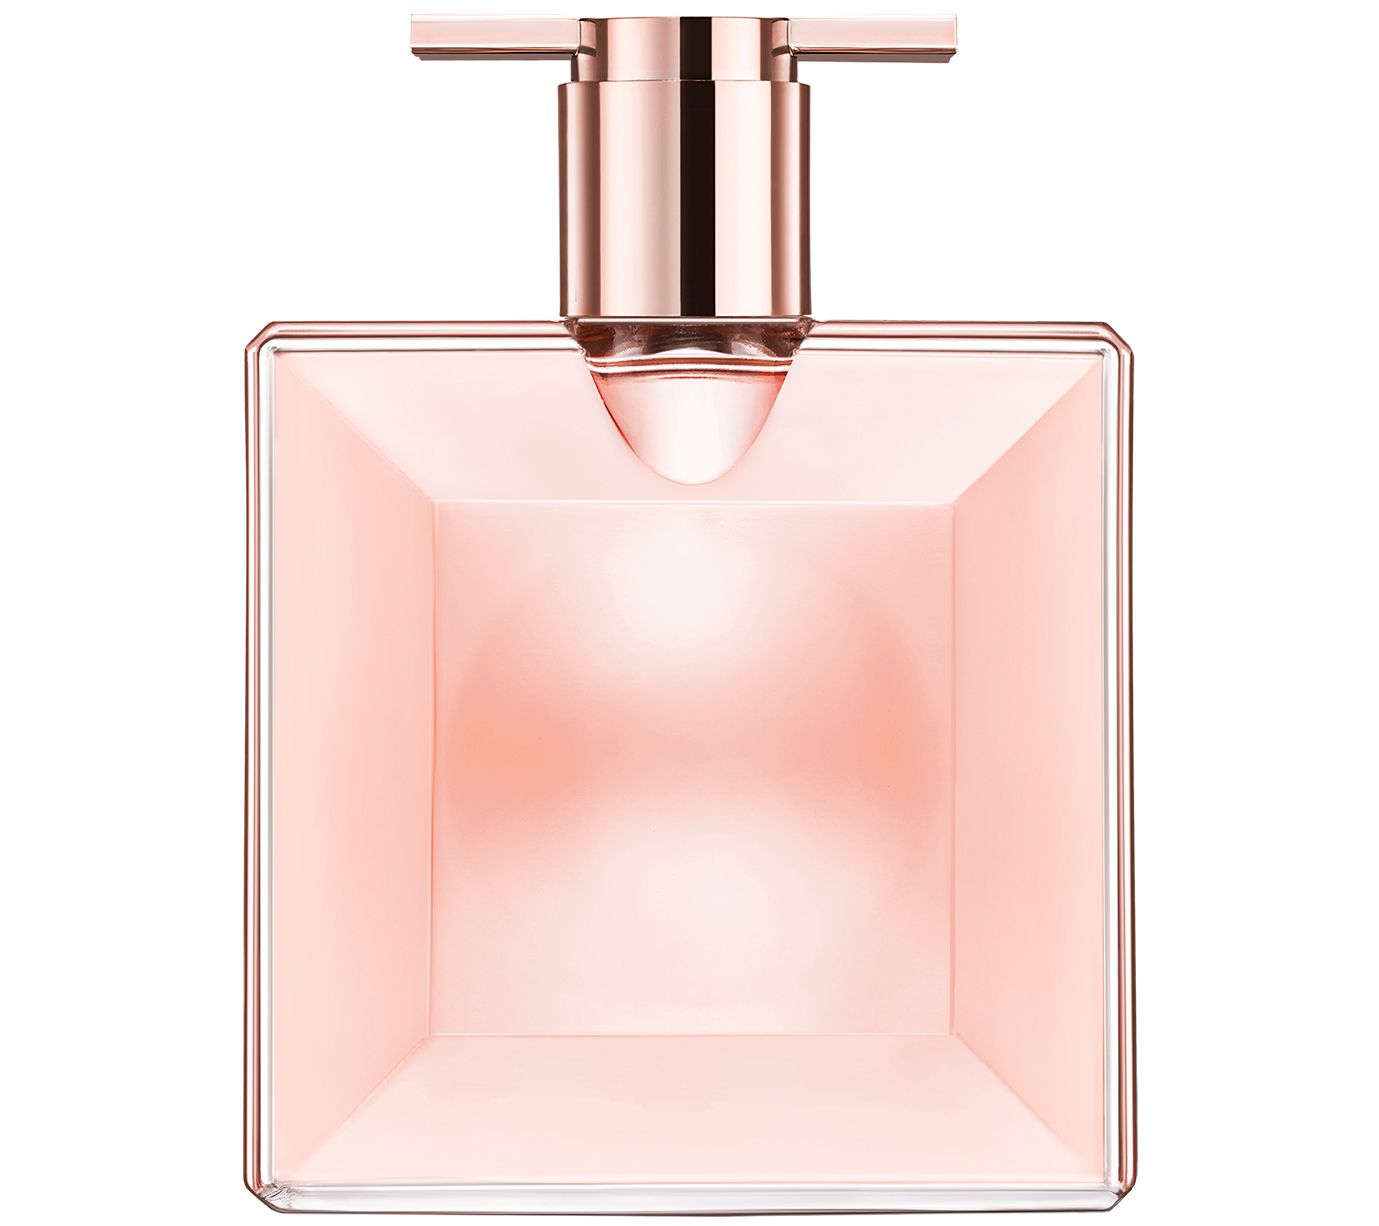 Lancome Idole Eau de Parfum, 0.8-fl oz - QVC.com